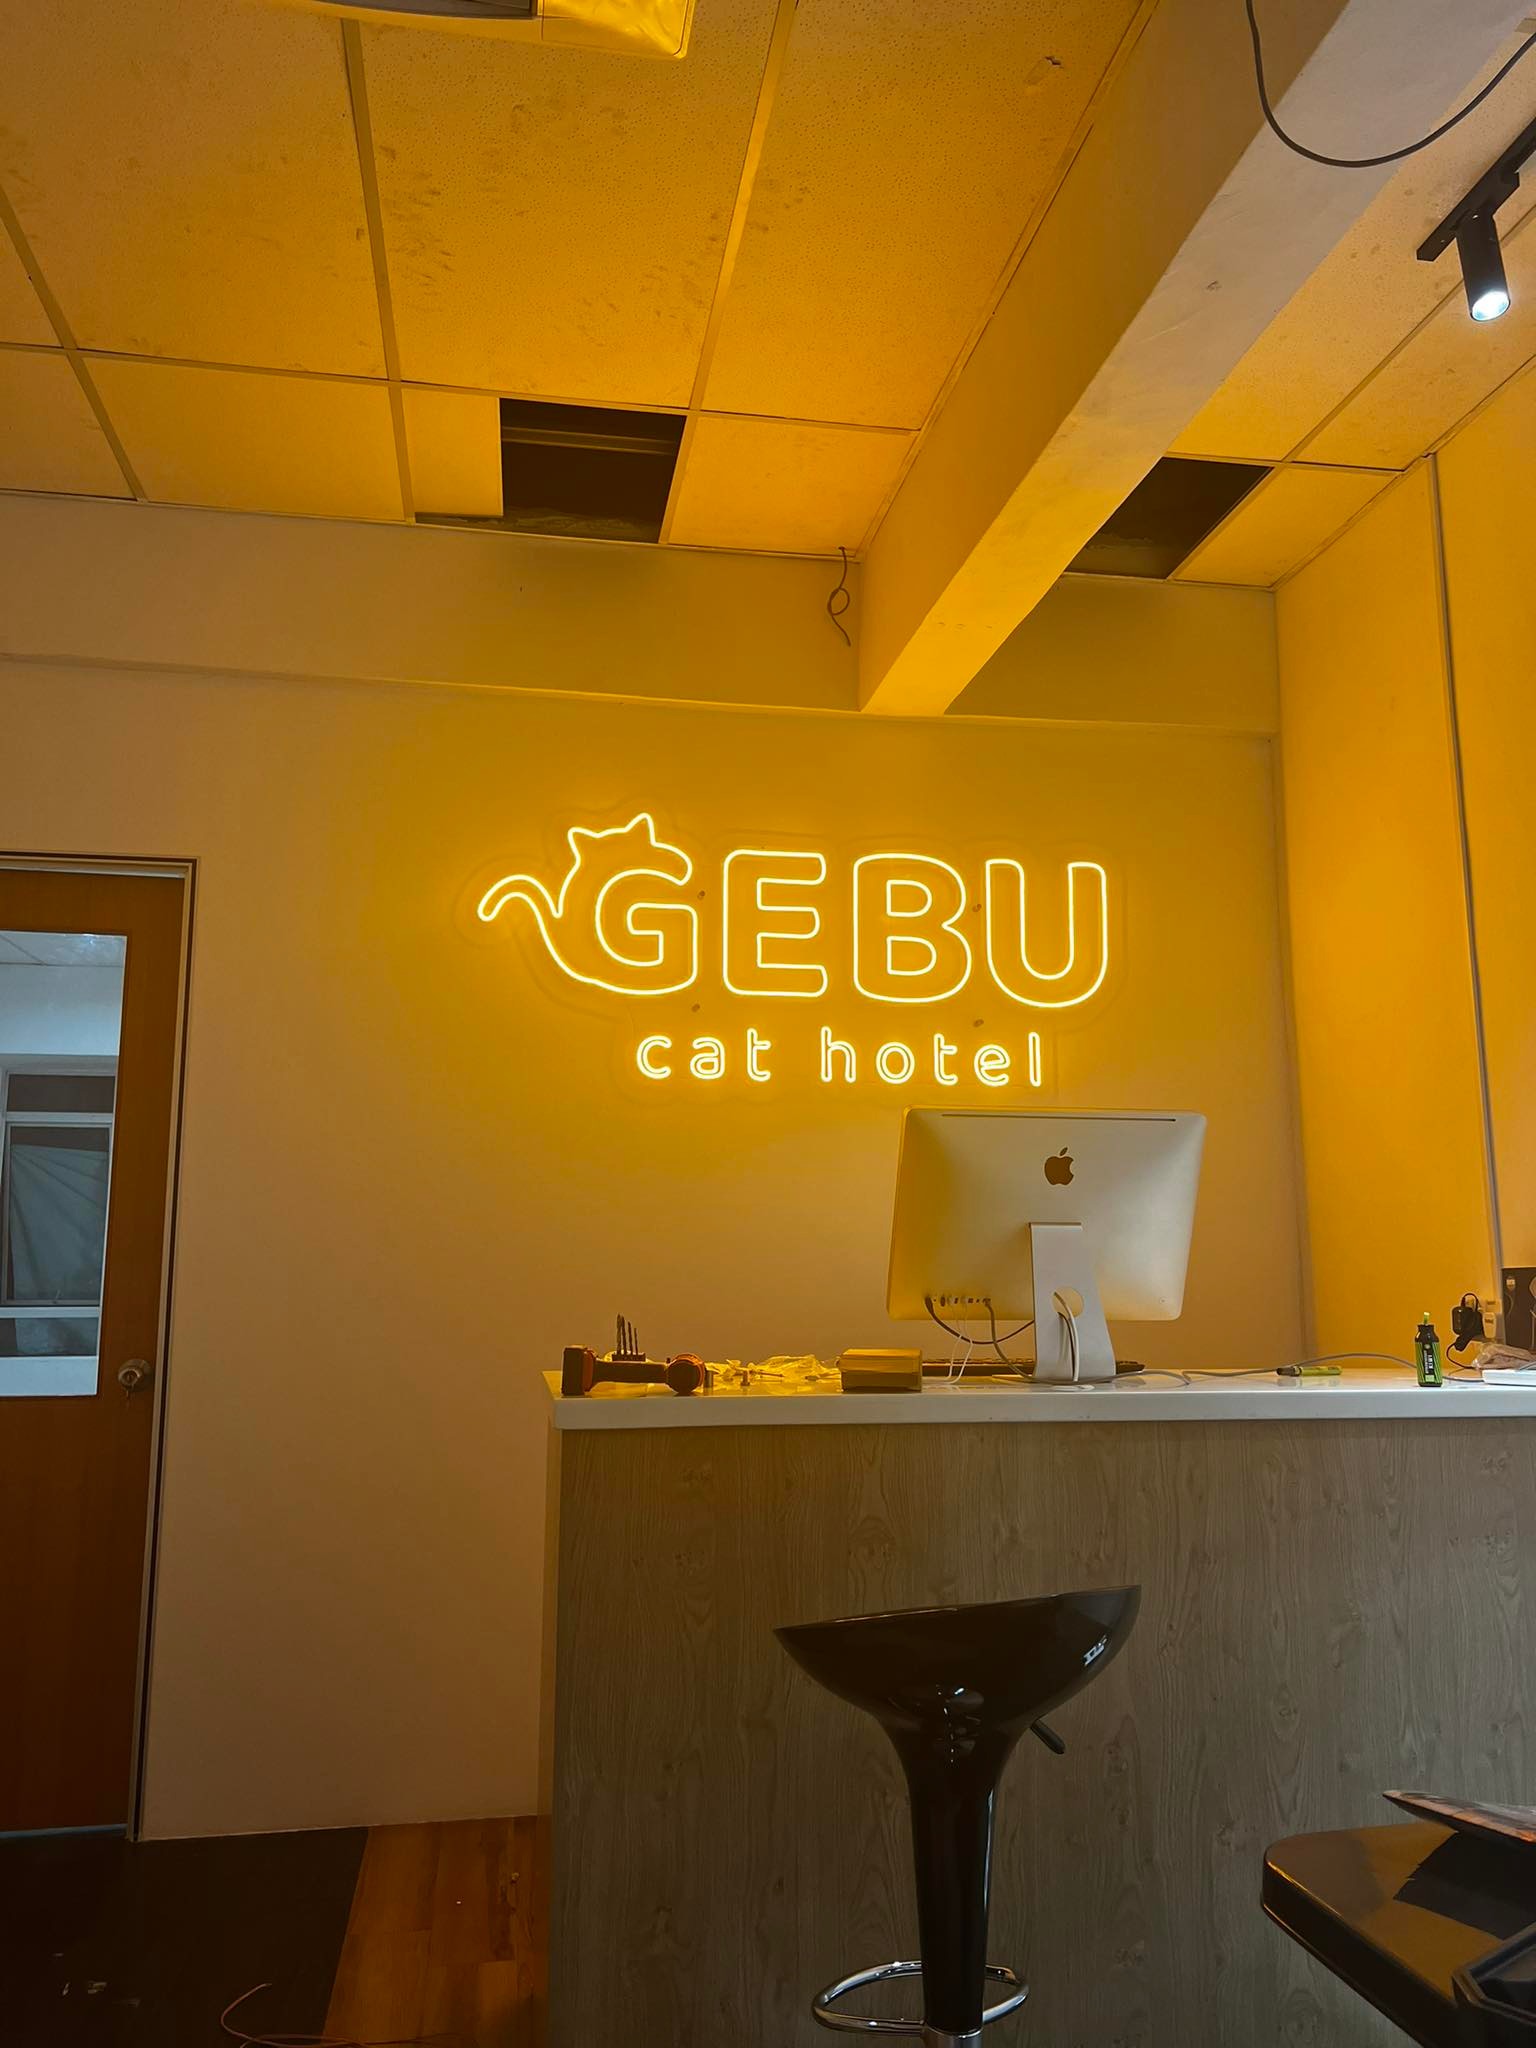 Gebu Cat Hotel – Premium, Affordable and Low Density Cat Hotel in Semenyih